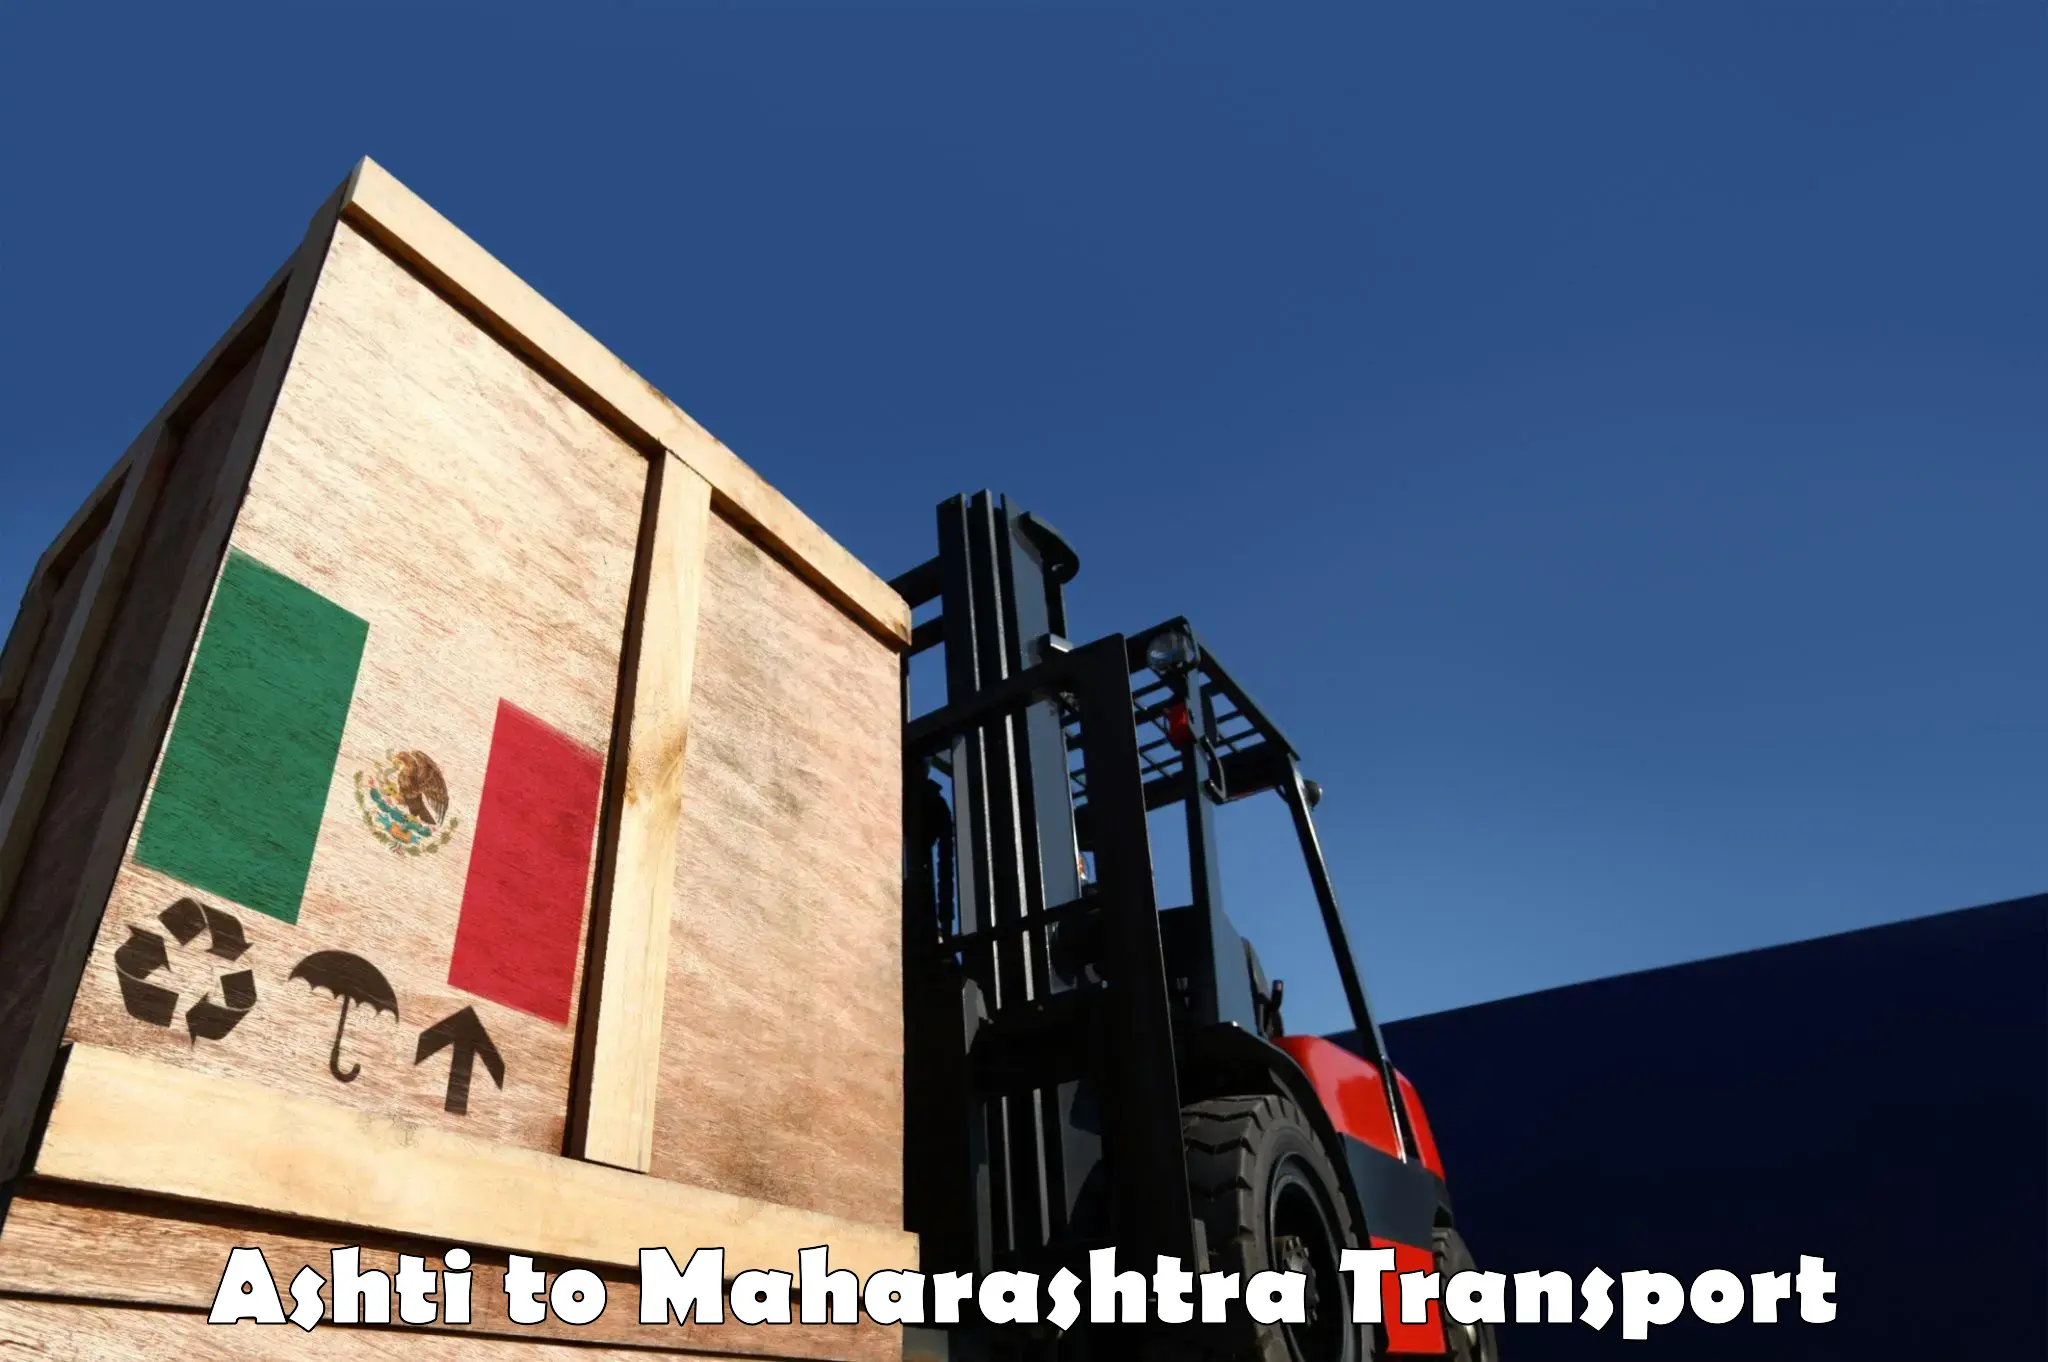 Intercity transport Ashti to Tata Institute of Social Sciences Mumbai